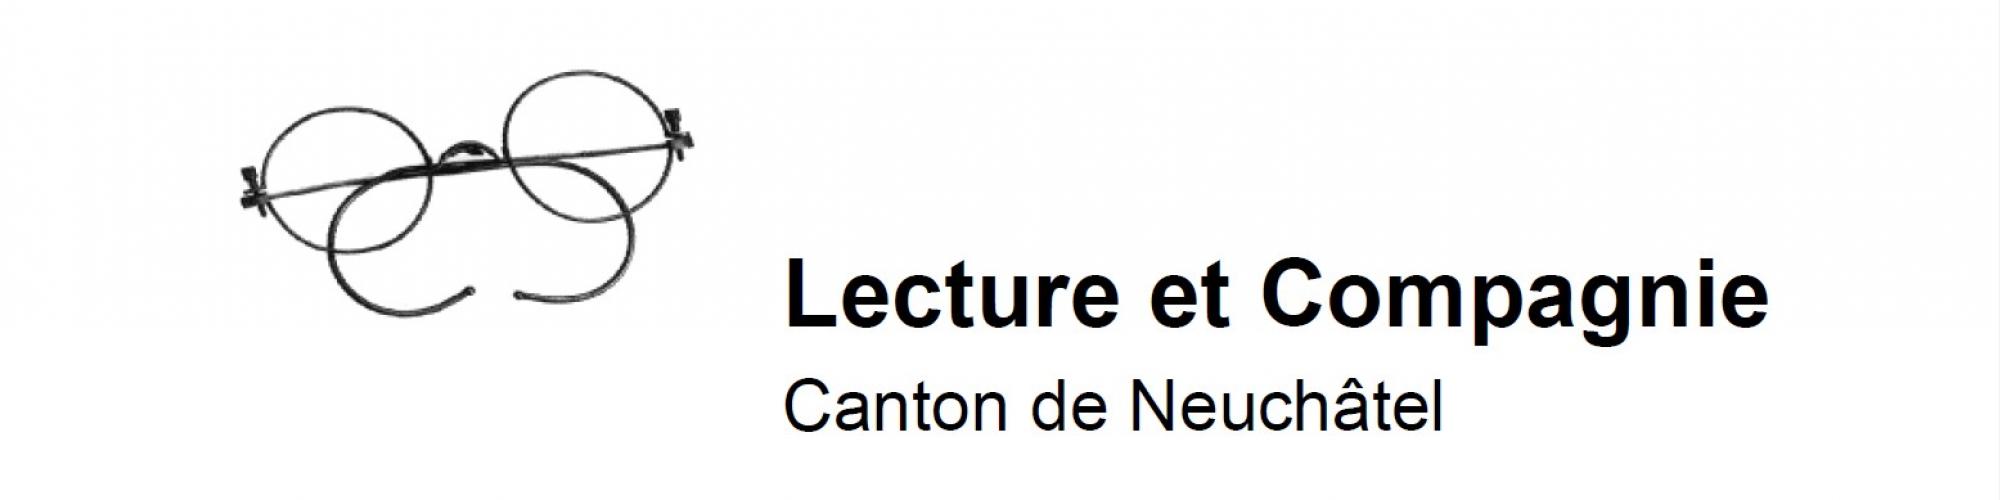 Lecture et Compagnie canton de Neuchâtel